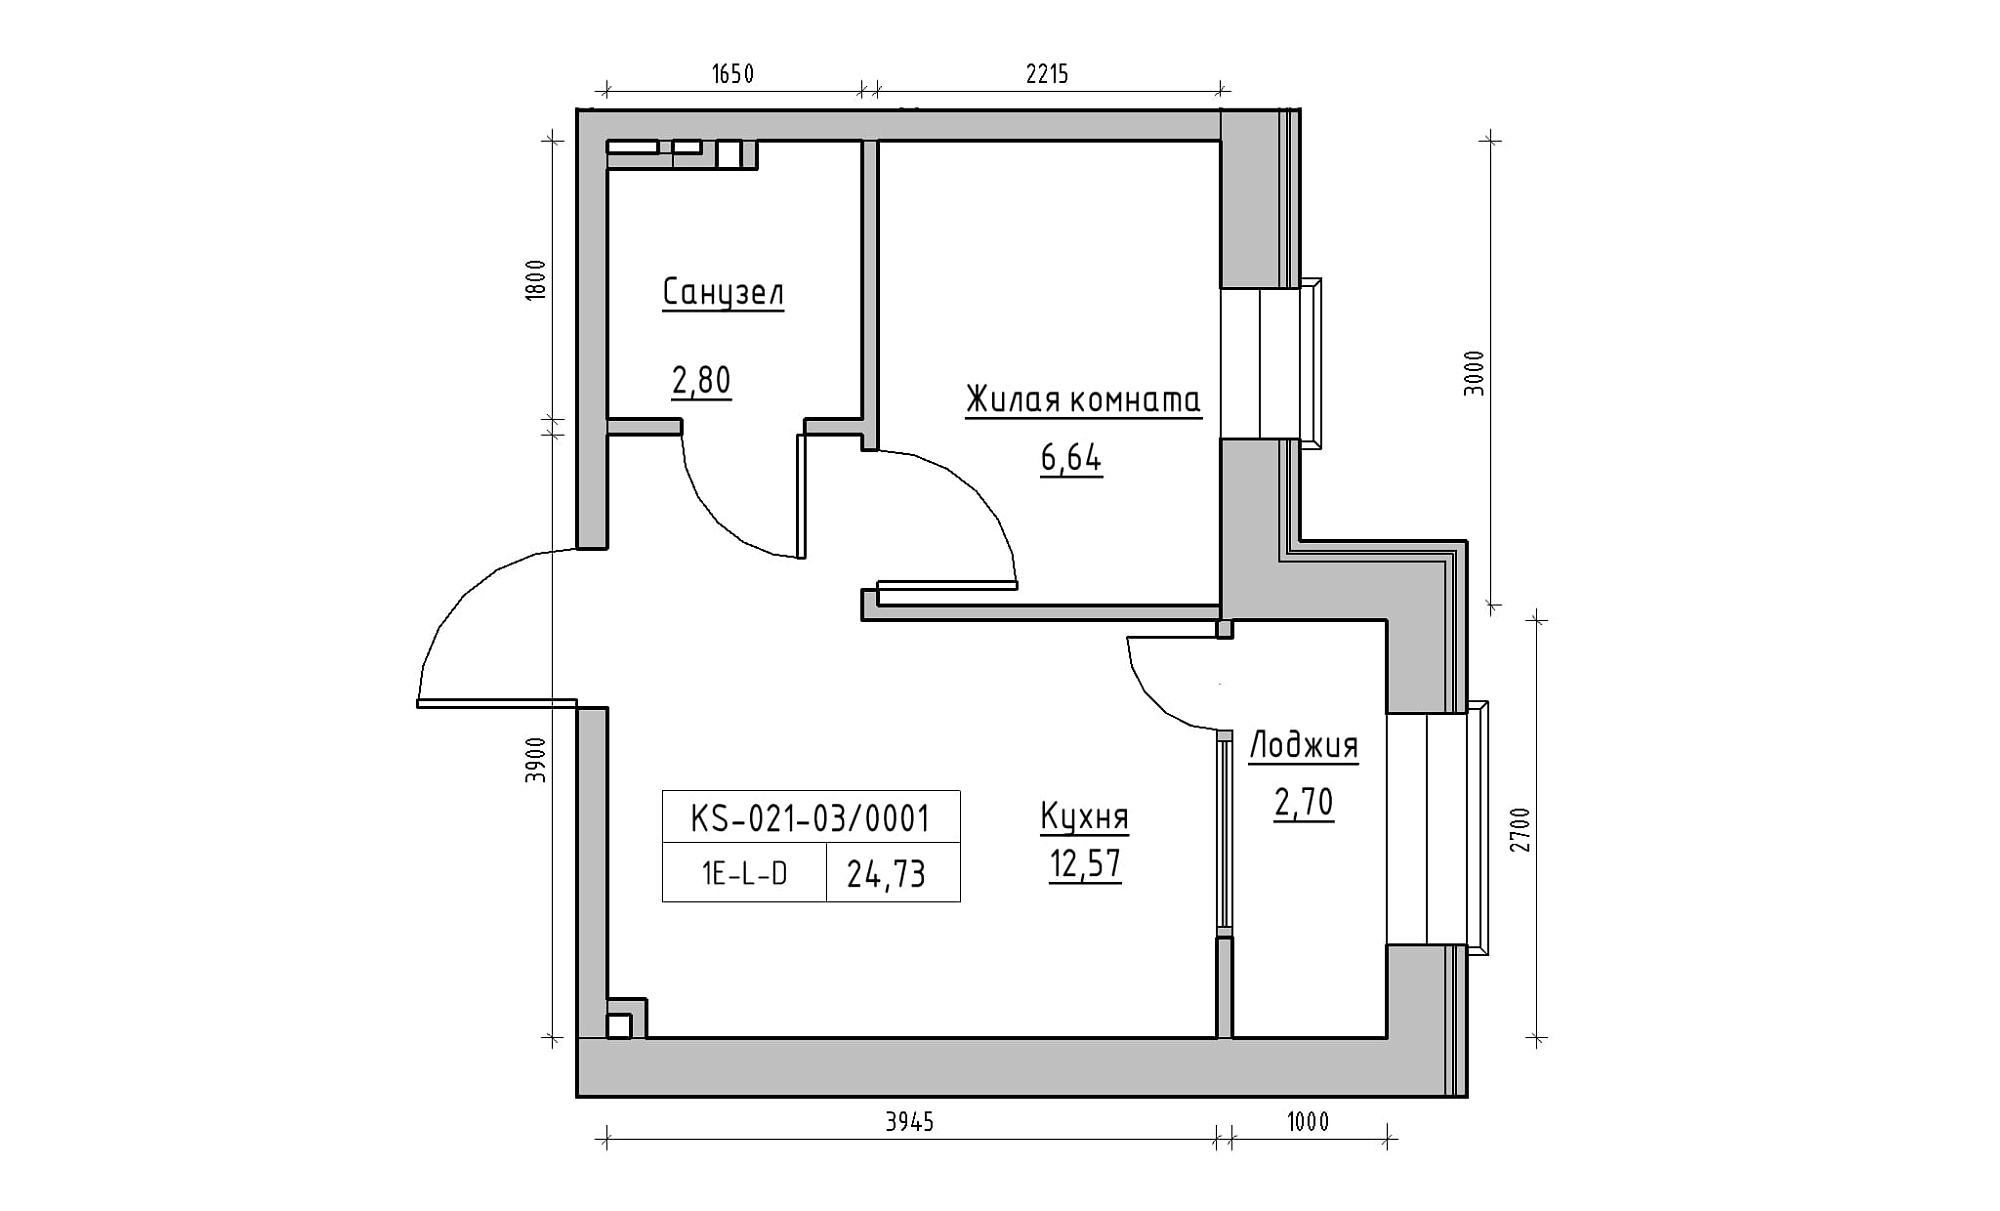 Планировка 1-к квартира площей 24.73м2, KS-021-03/0001.